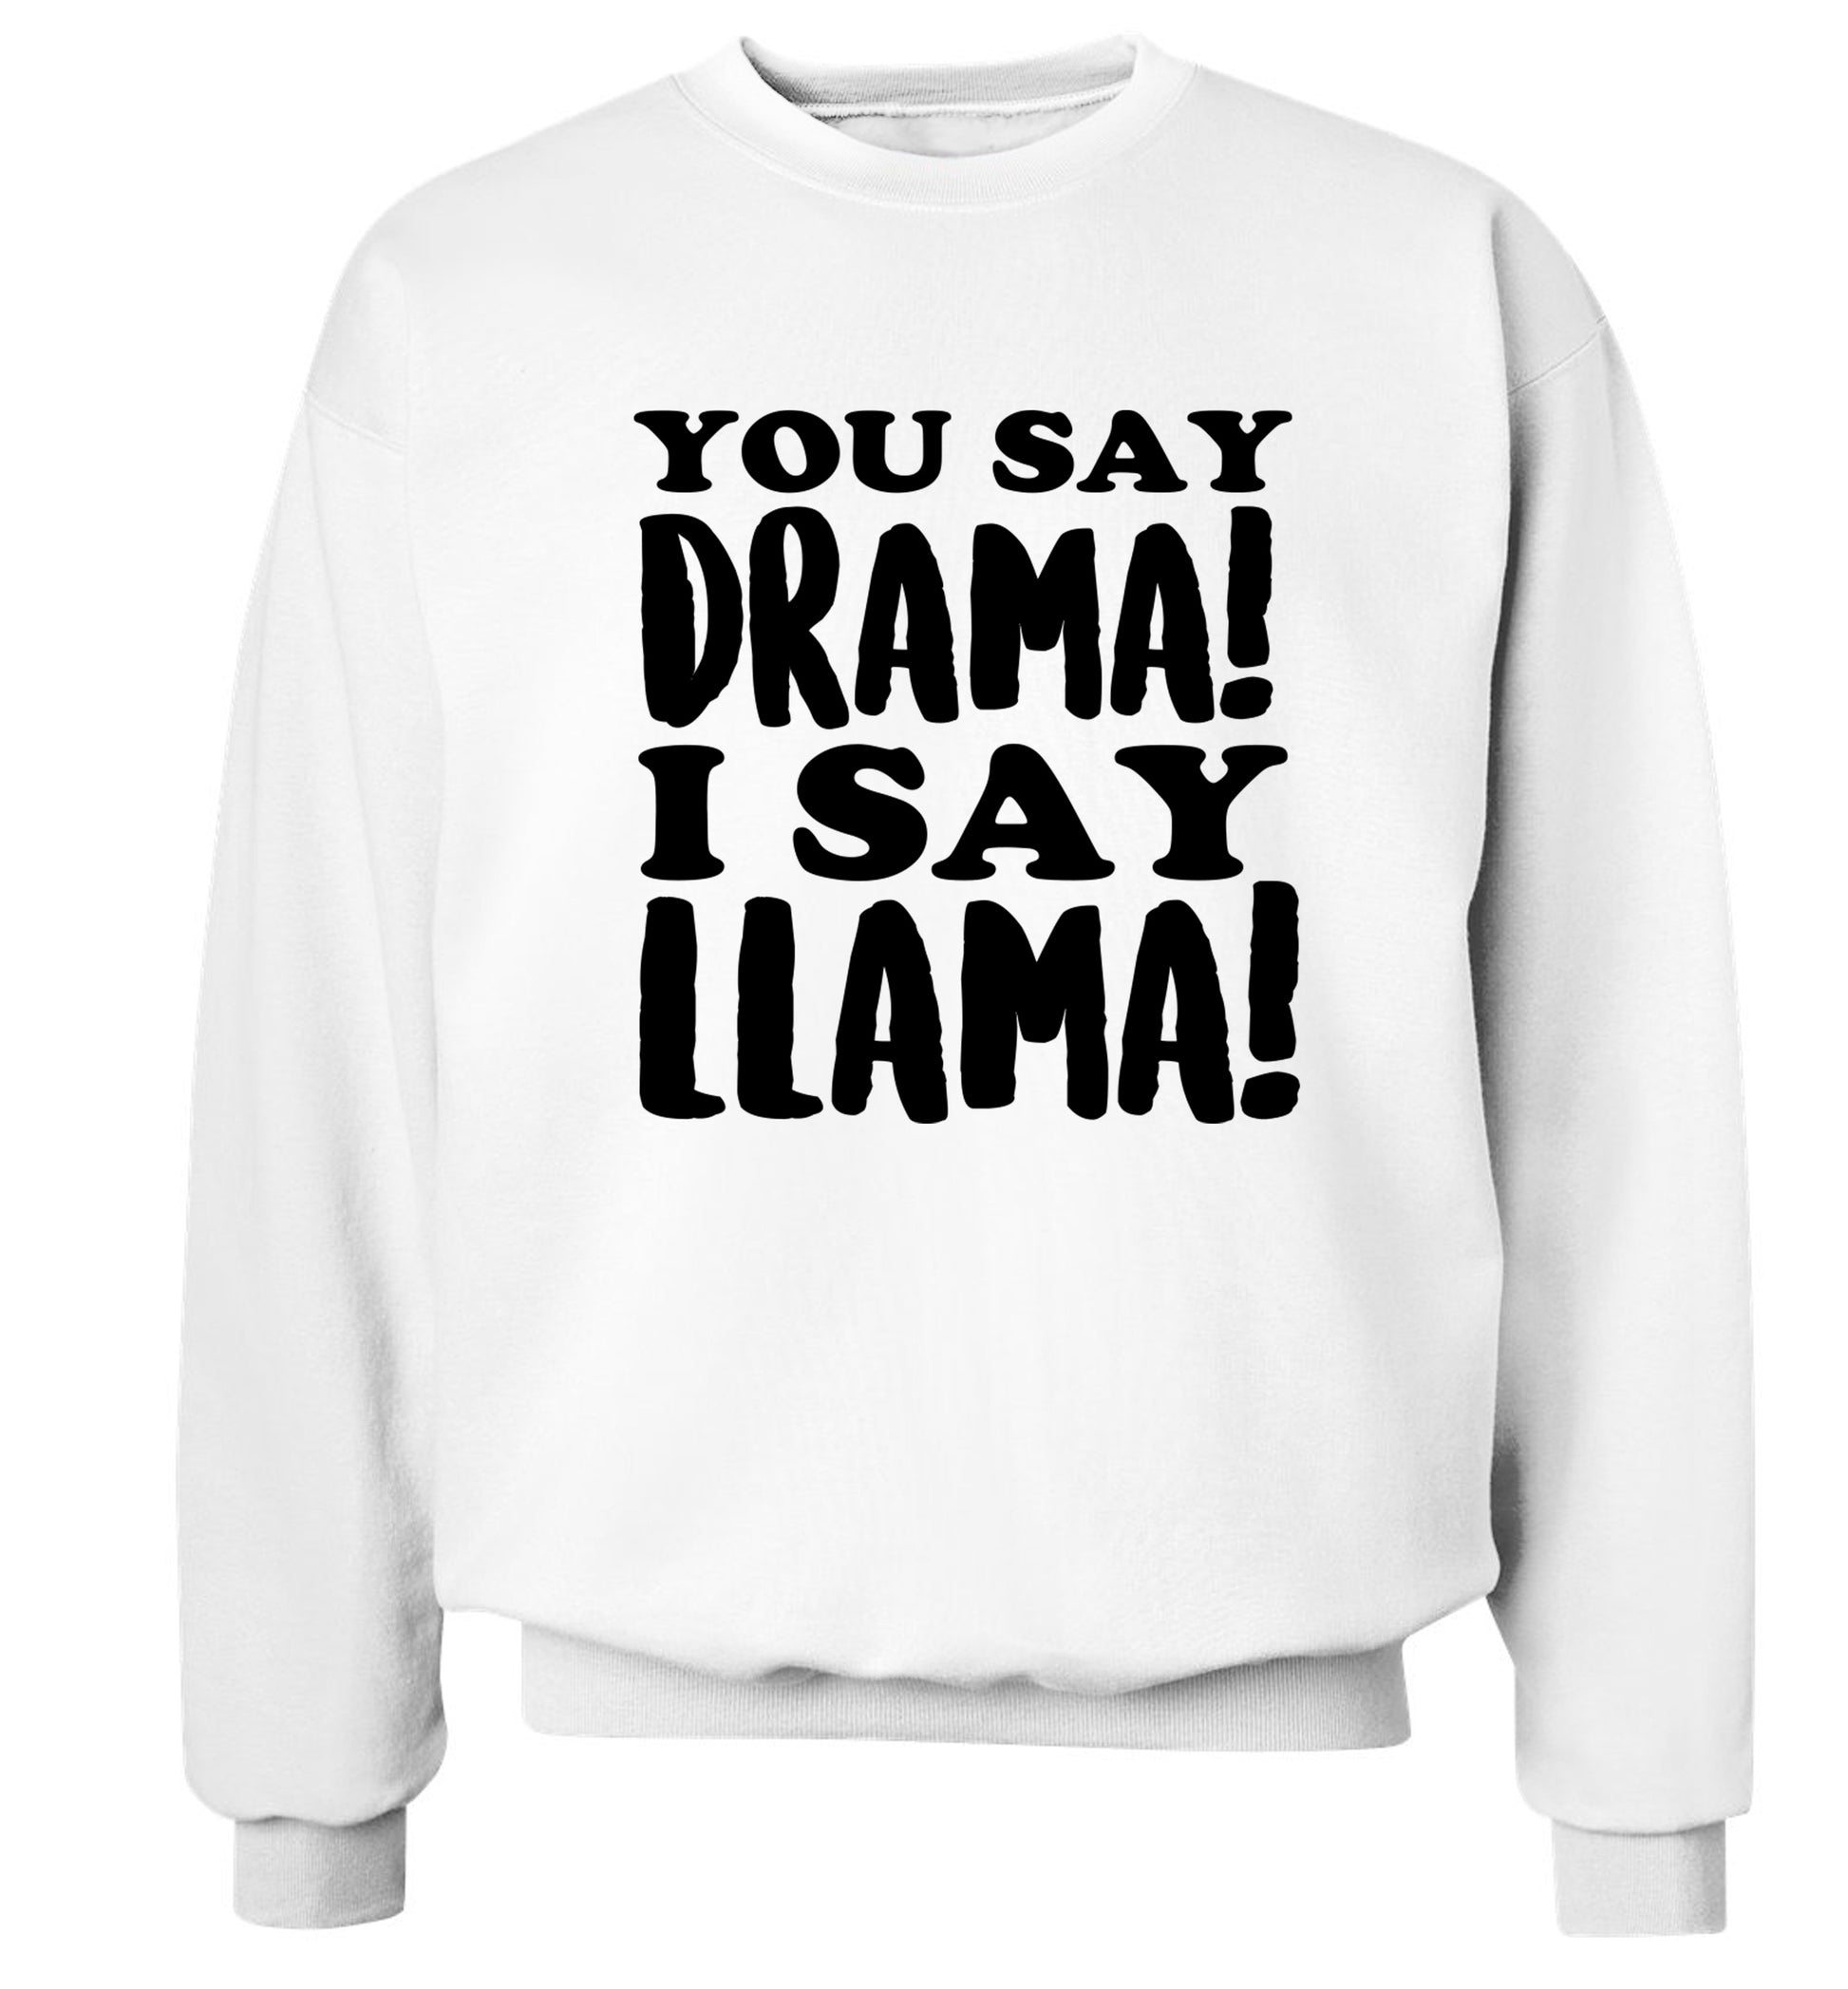 You say drama I say llama! Adult's unisex white Sweater 2XL